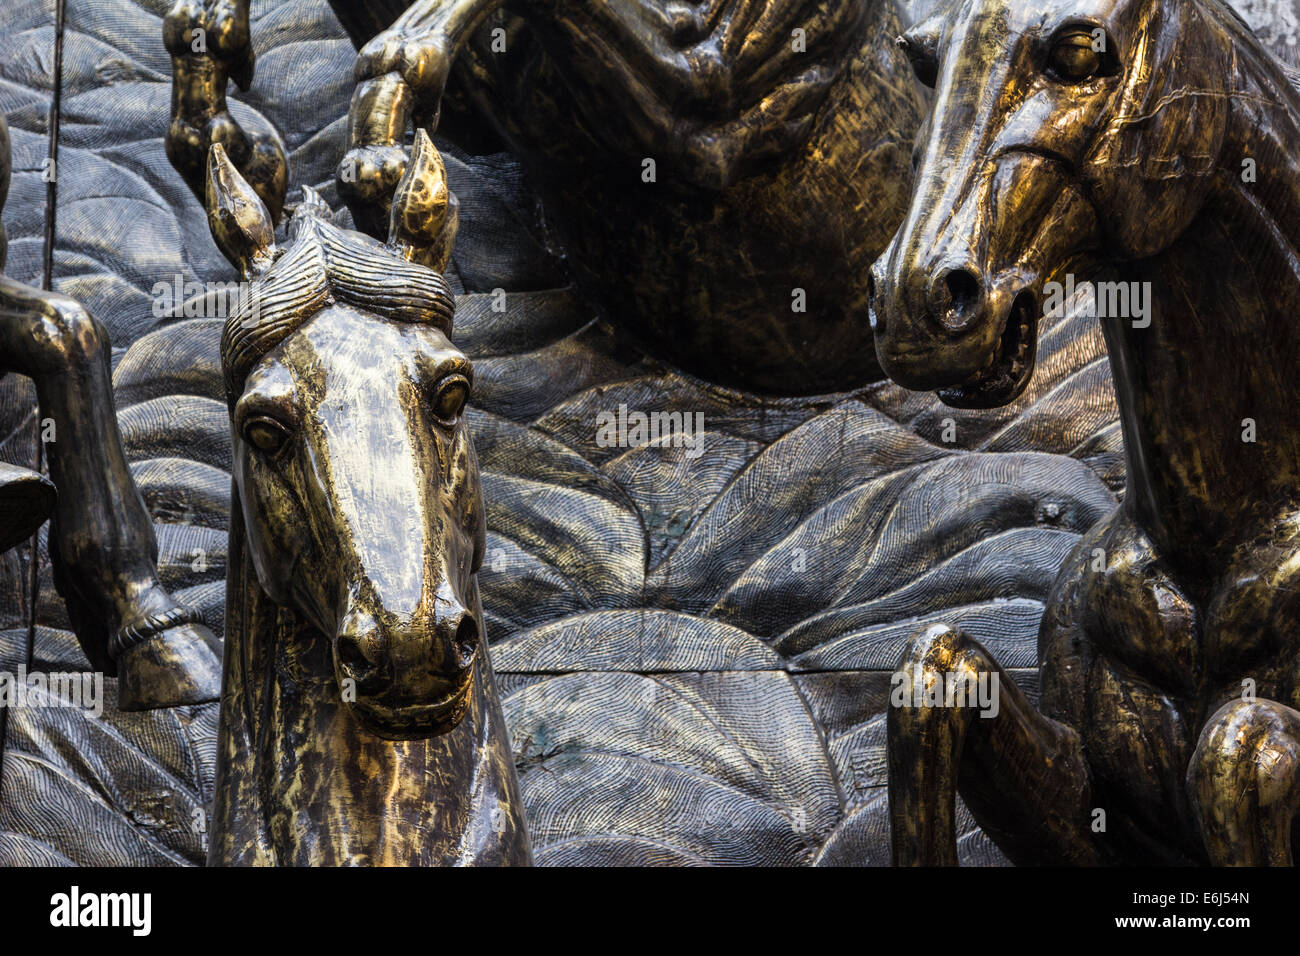 Bronze horse sculptures at the stables Camden market Camden town London England Stock Photo